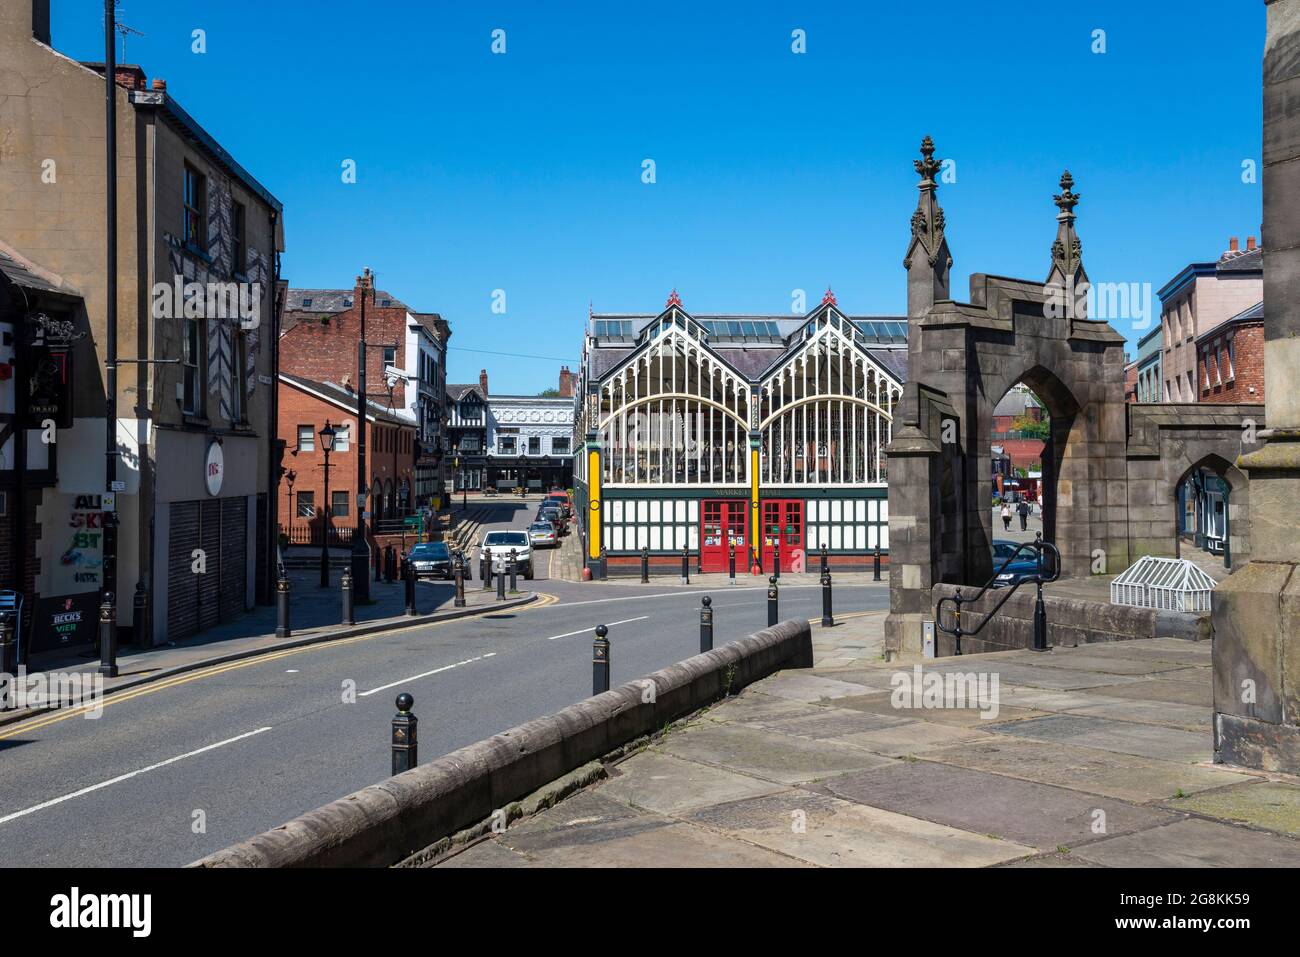 Stockports alte viktorianische Markthalle von der Seite der St. Mary's Church mit dem gotischen Torbogen auf der rechten Seite, Greater Manchester, England. Stockfoto